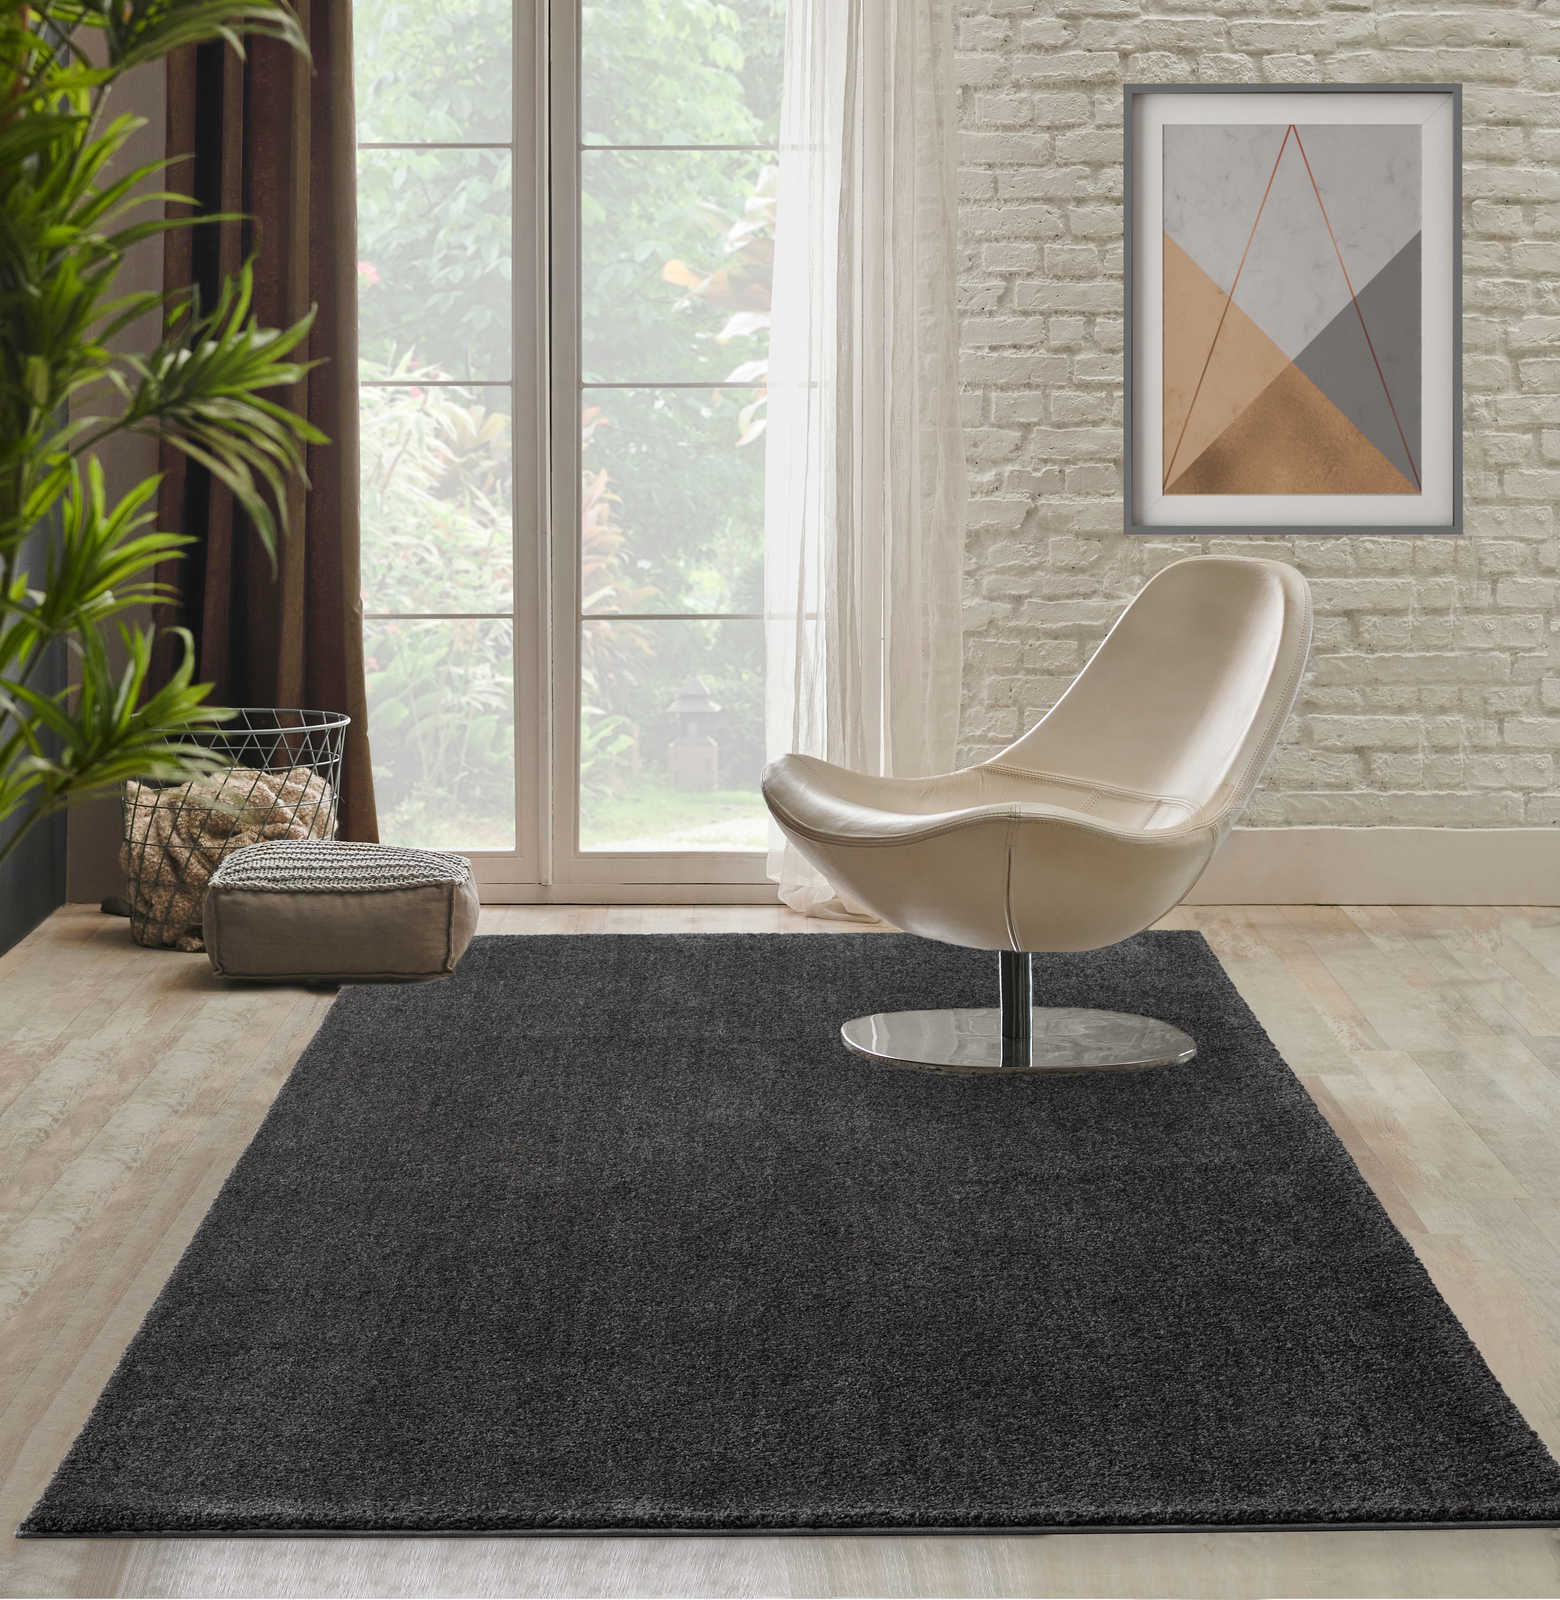 Zacht kortpolig tapijt in antraciet - 110 x 60 cm
